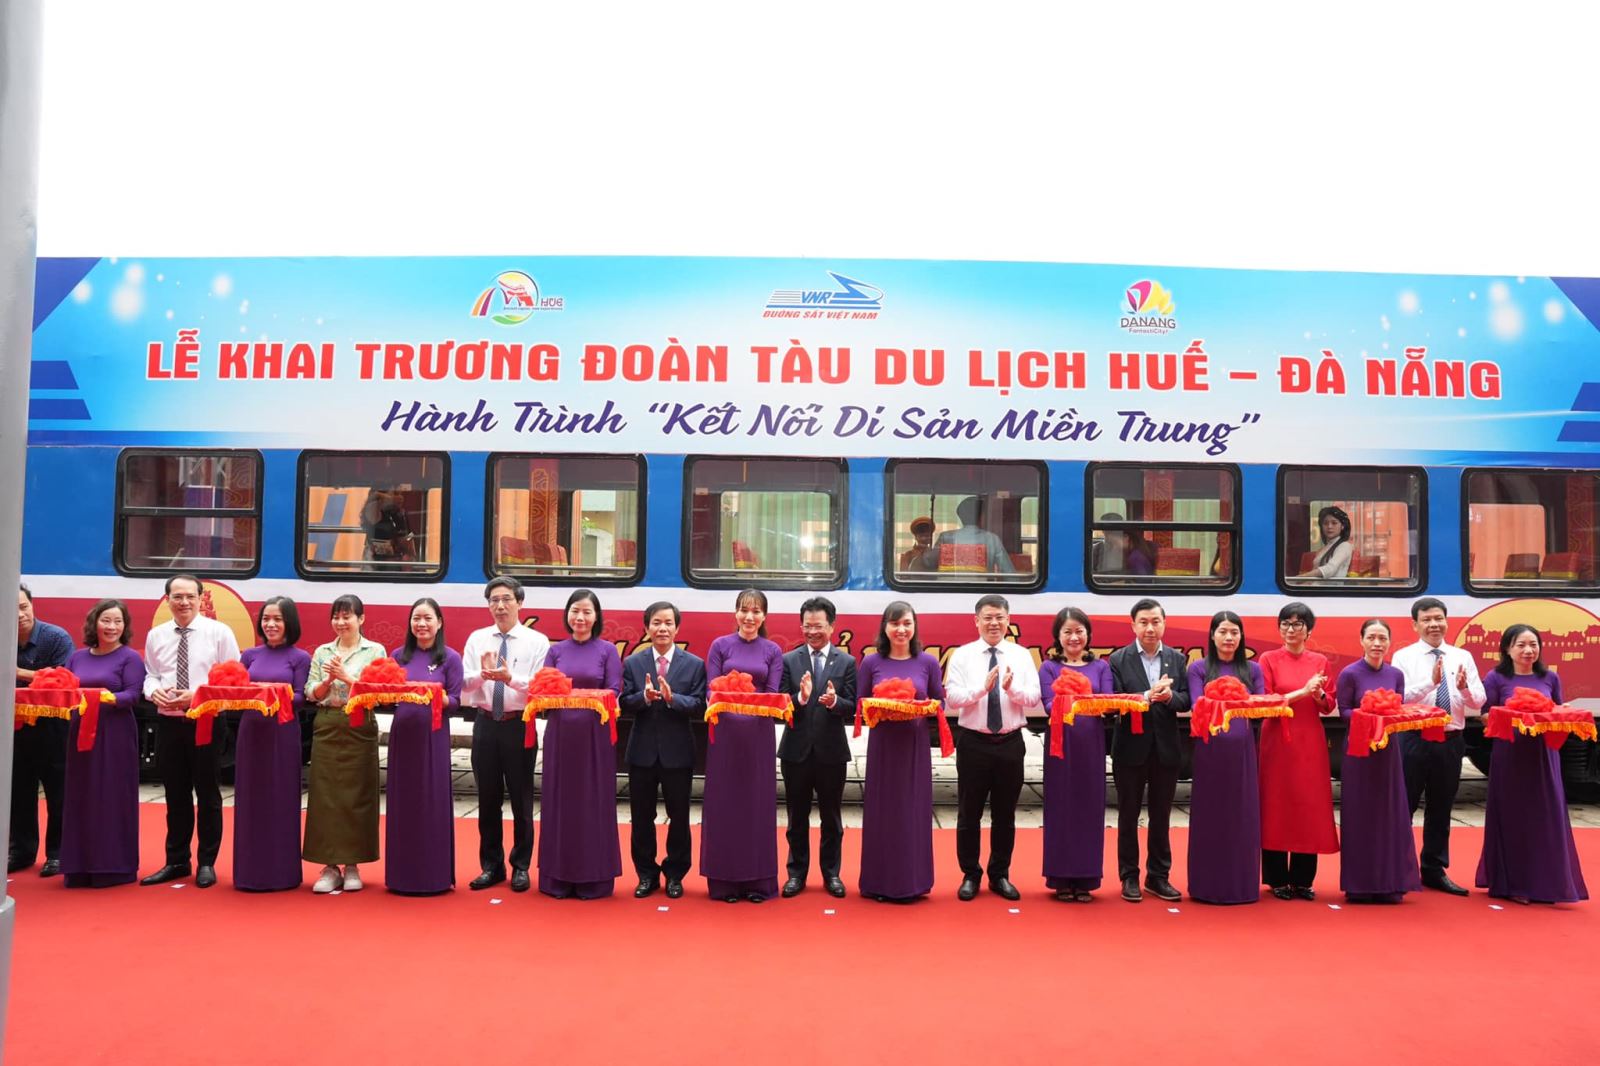 Khai trương đoàn tàu du lịch đường sắt Huế - Đà Nẵng.